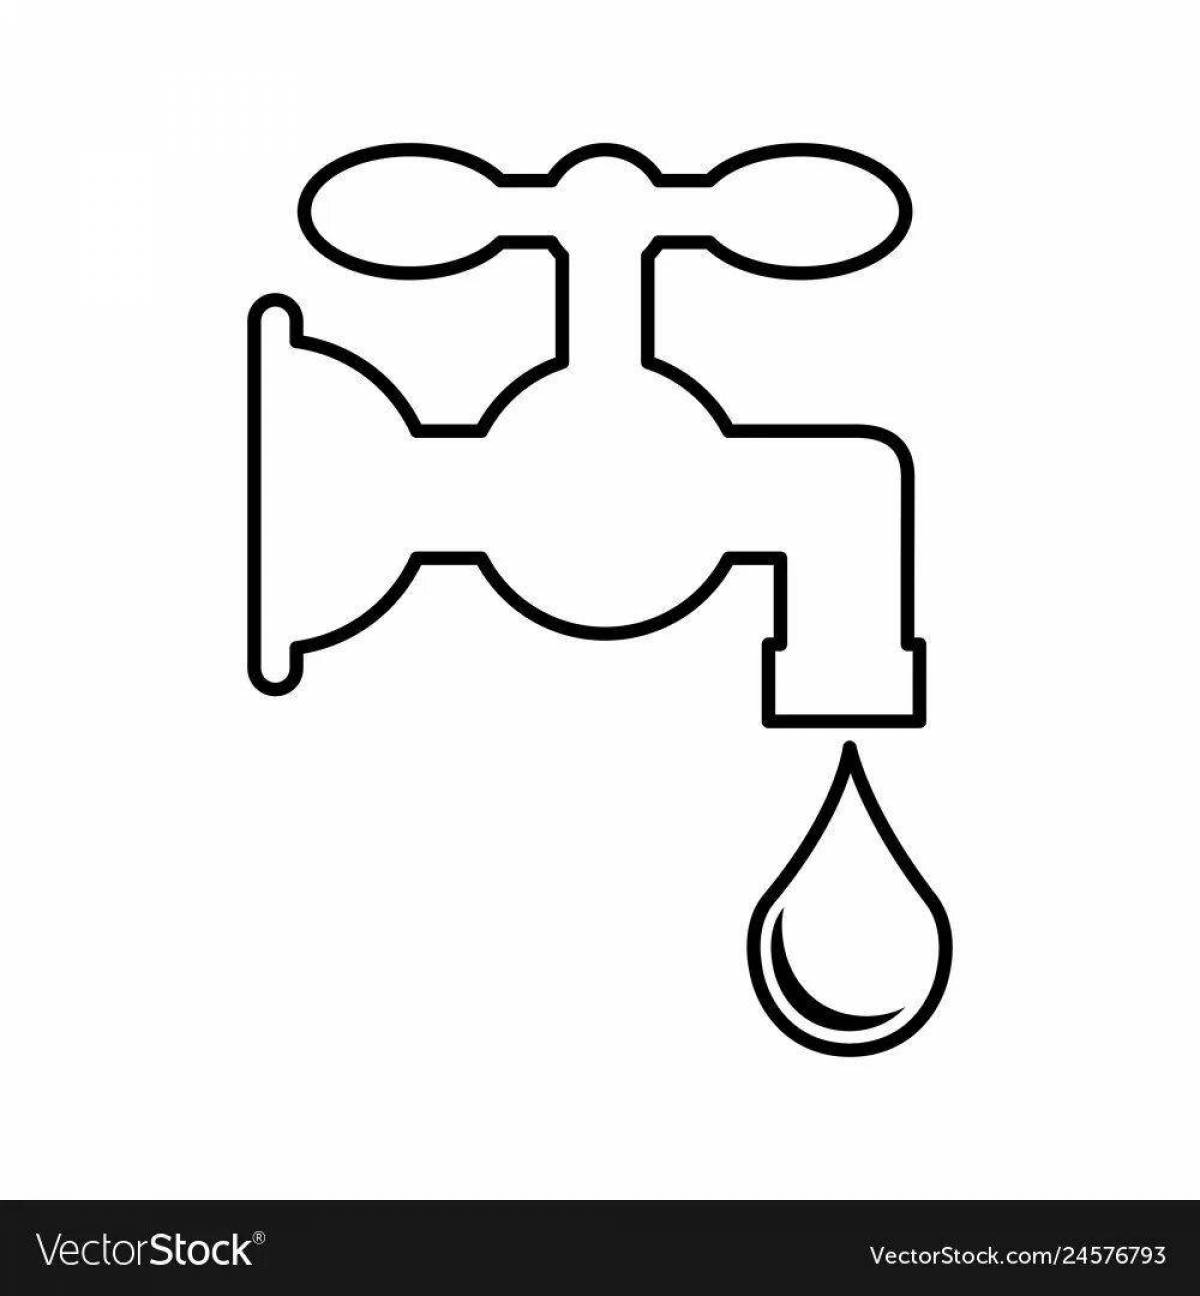 Children's water faucet #14